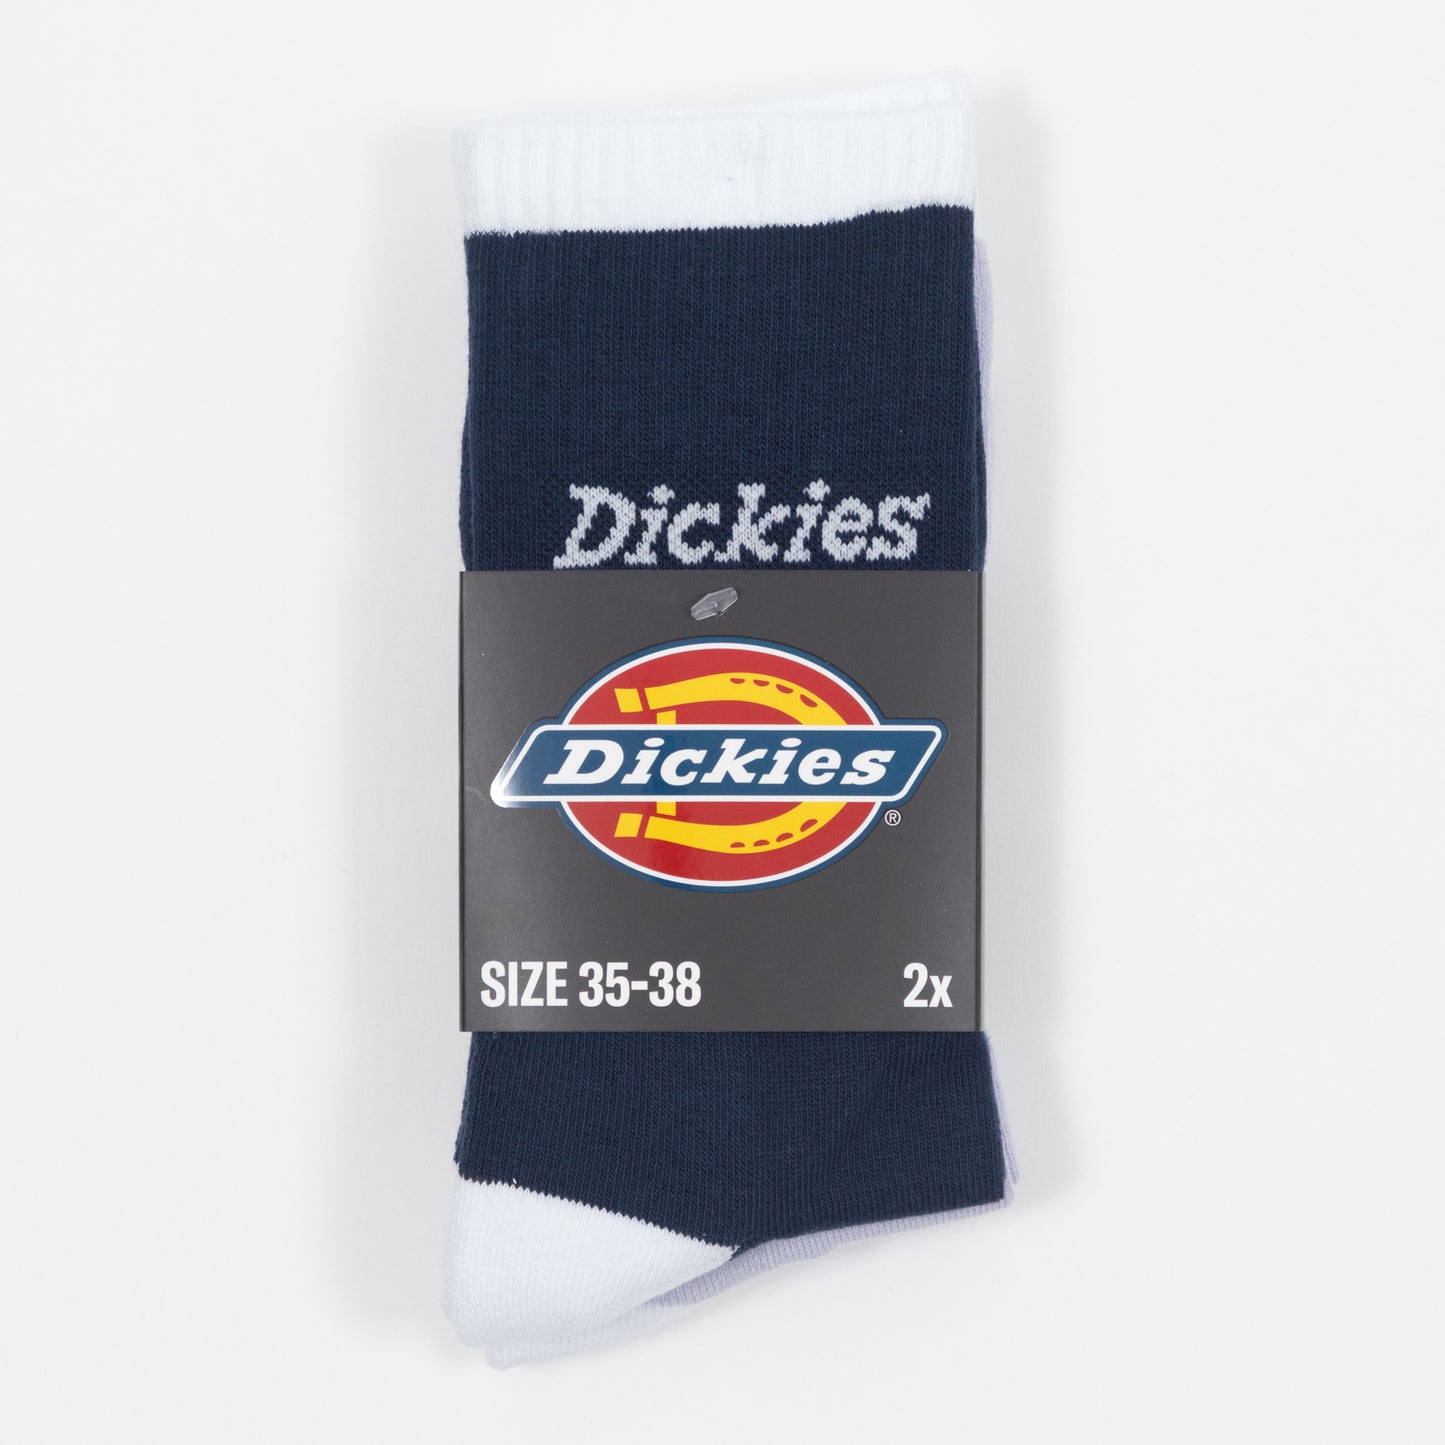 DICKIES Ness City 2 Pack Socks in NAVY & PURPLE